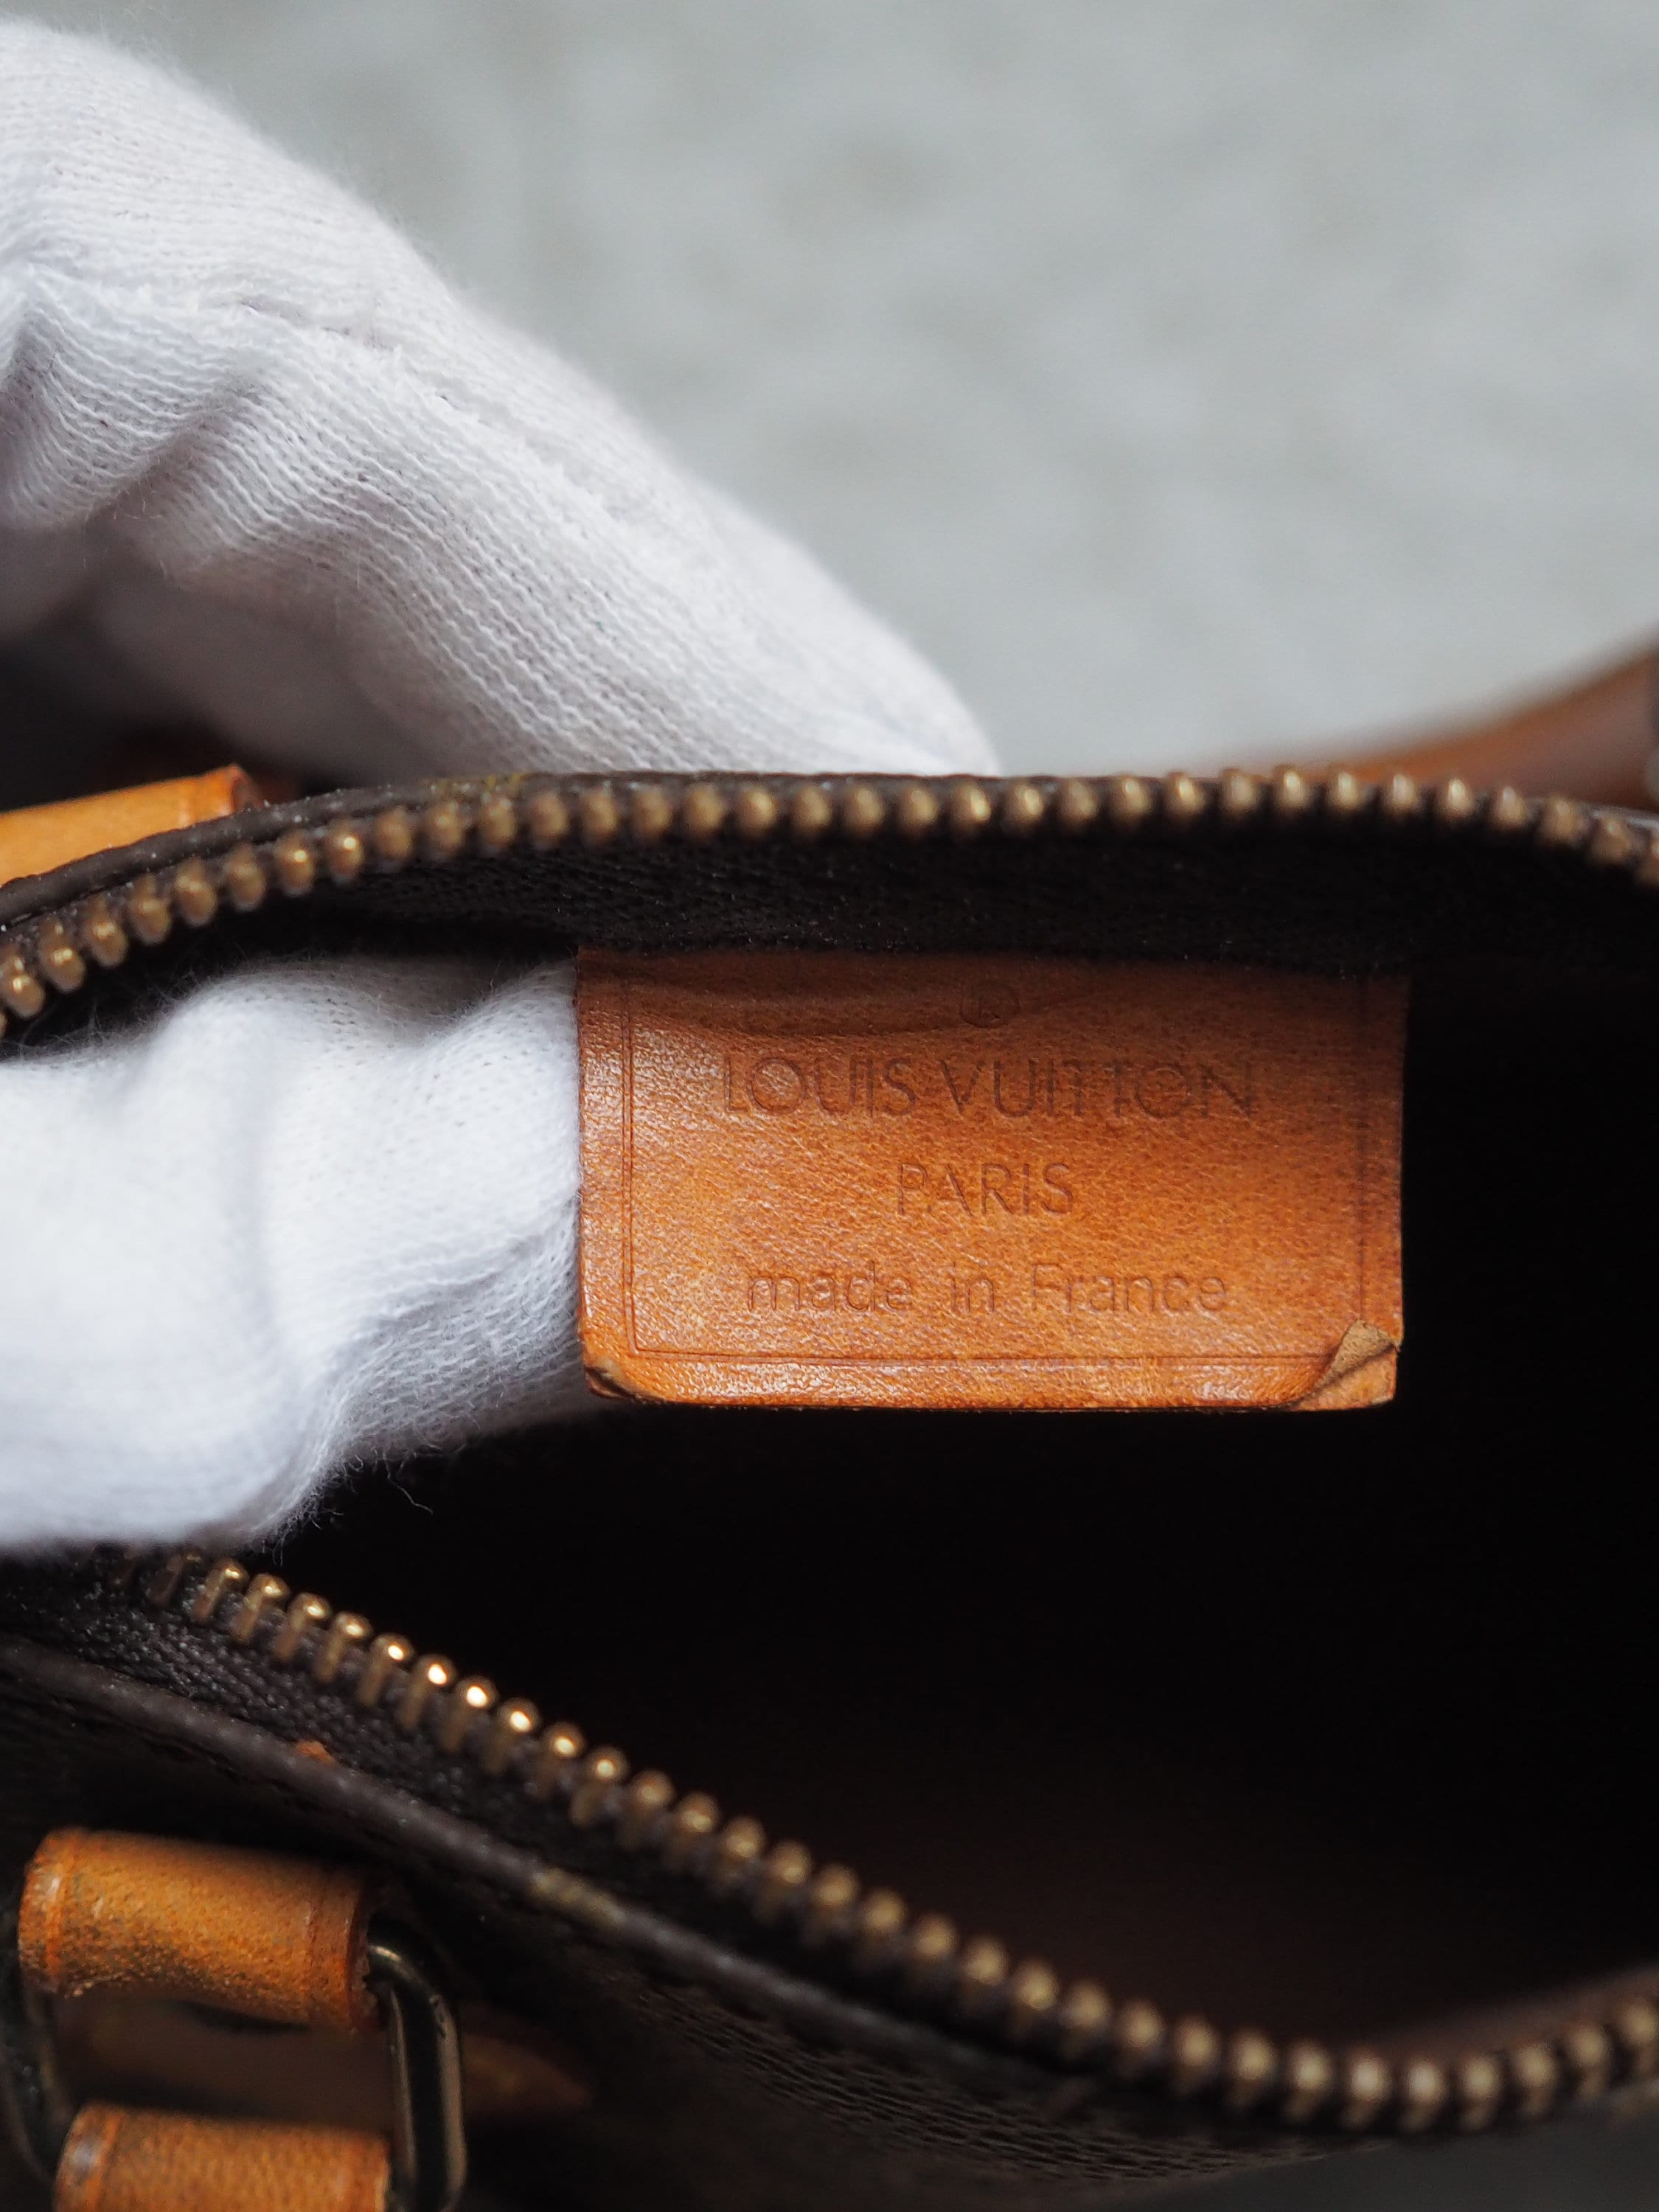 LOUIS VUITTON Monogram Mini Speedy Hand Shoulder Bag M41534 Brown Vintage Authentic